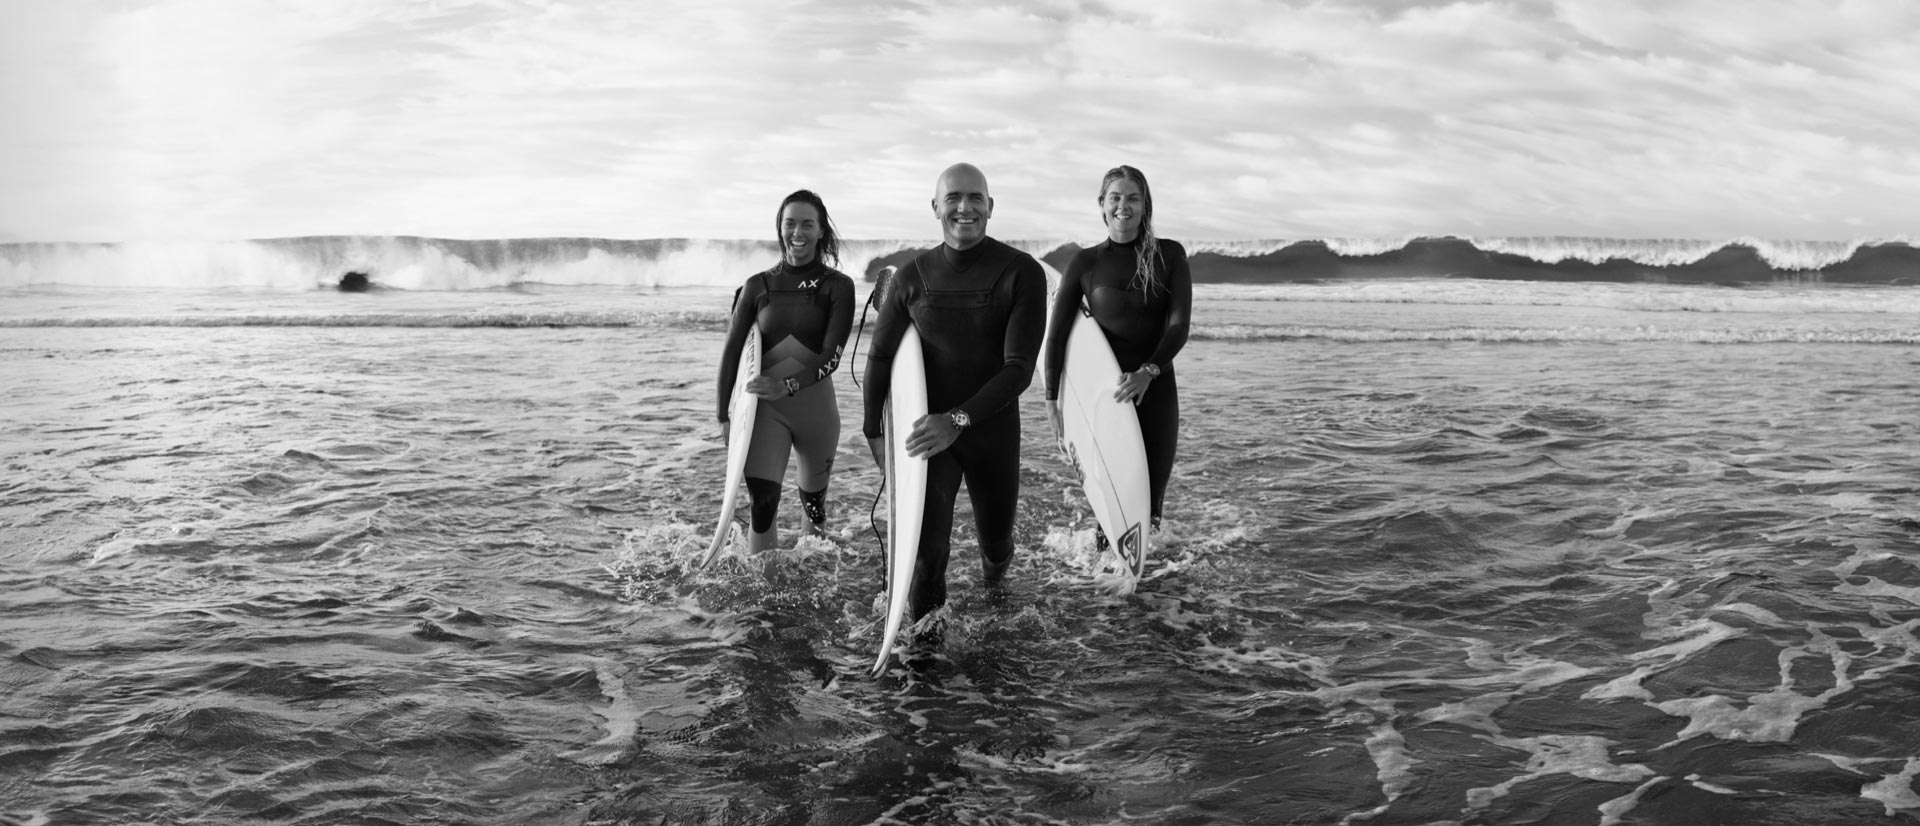 Breitling Surfer Squad 